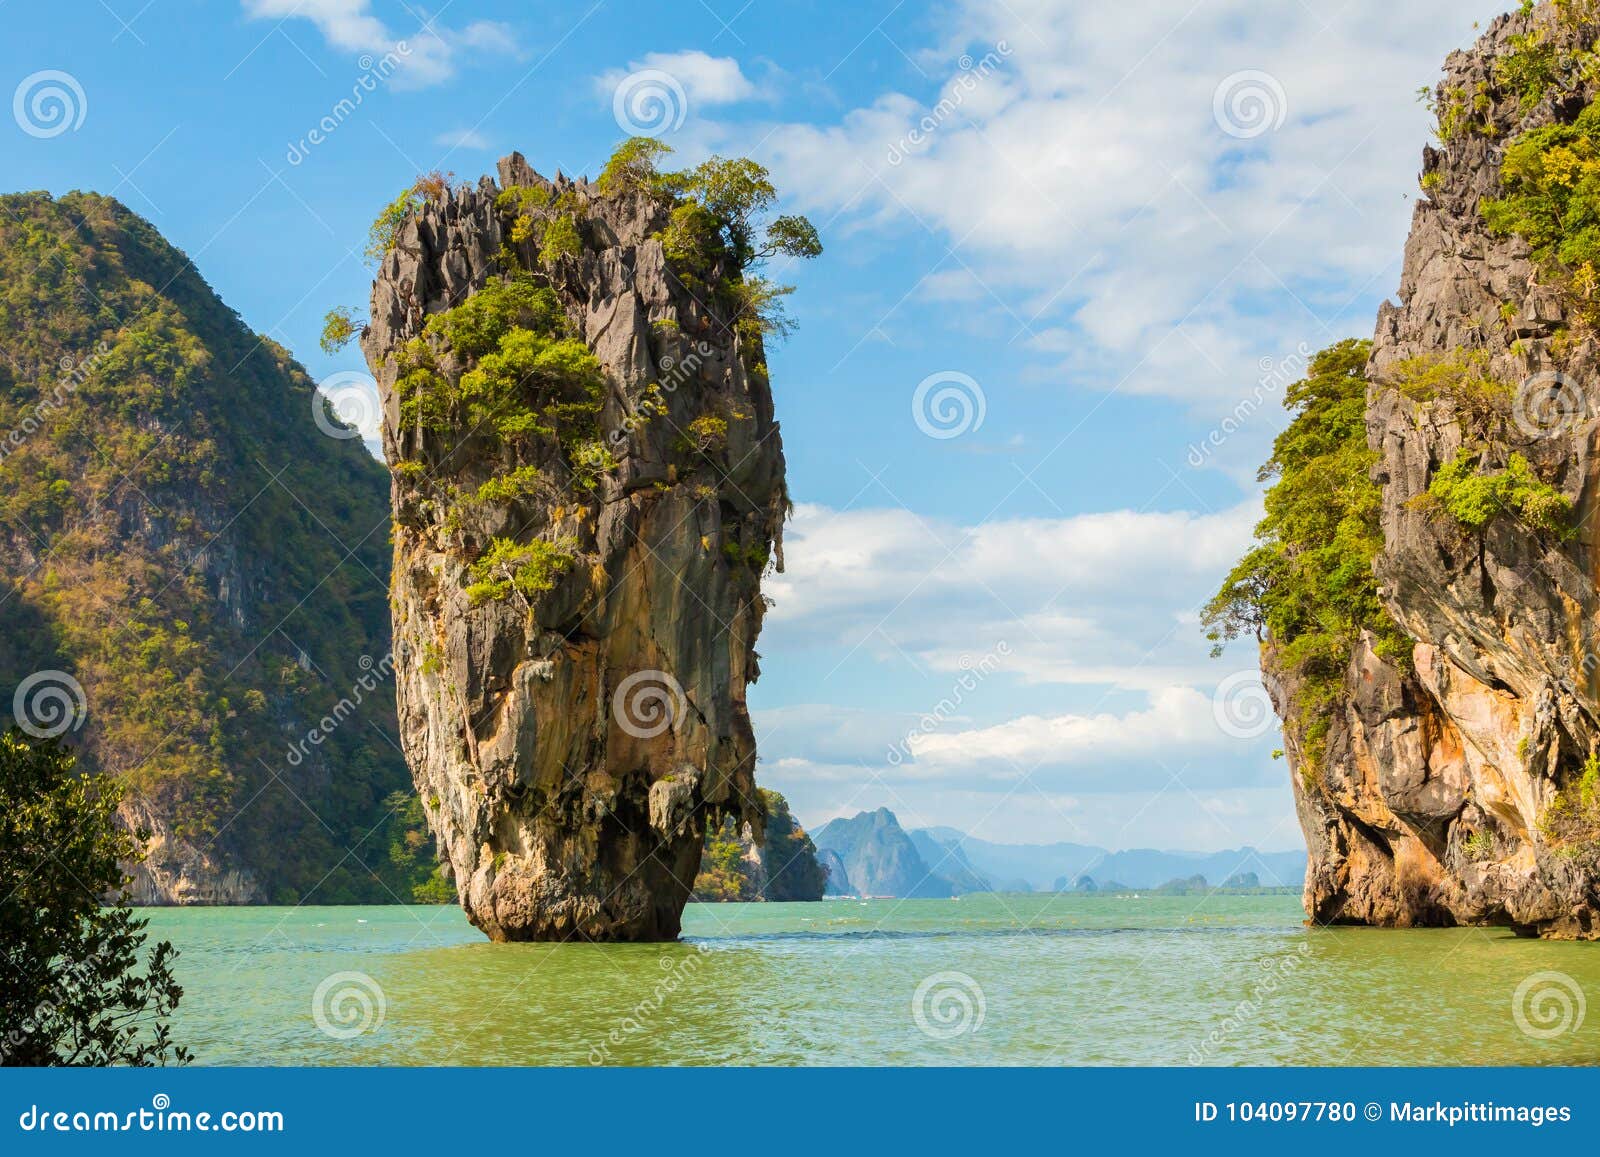 Ao Phang Nga National Park James Bond Island Stock Photo - Image of ...